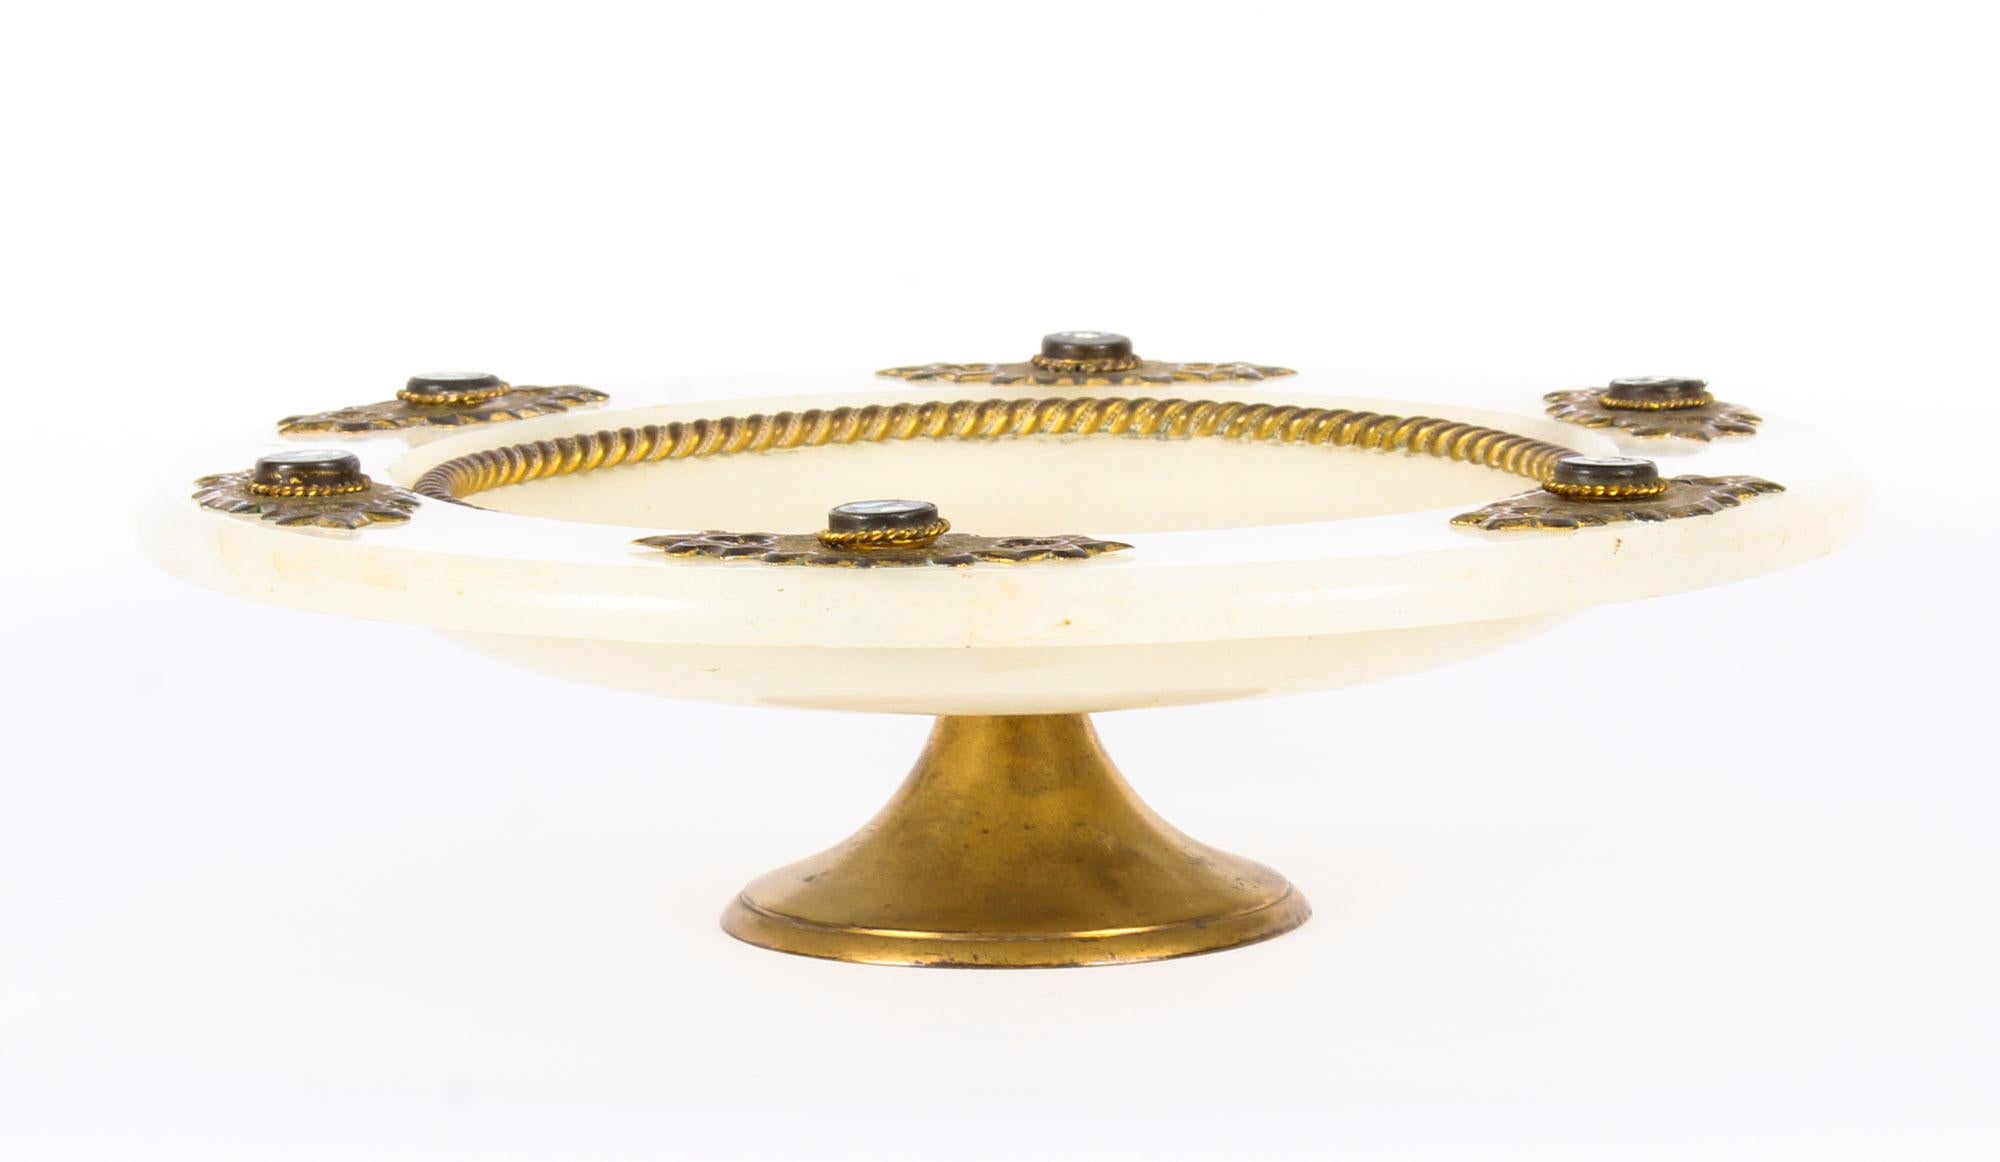 Il s'agit d'un superbe plat de table italien ancien de qualité, monté en Pietra Dura, en laiton doré et en albâtre, datant de la fin du XIXe siècle.

Avec de remarquables montures en laiton ciselé percées de style néo-gothique, ce splendide plat